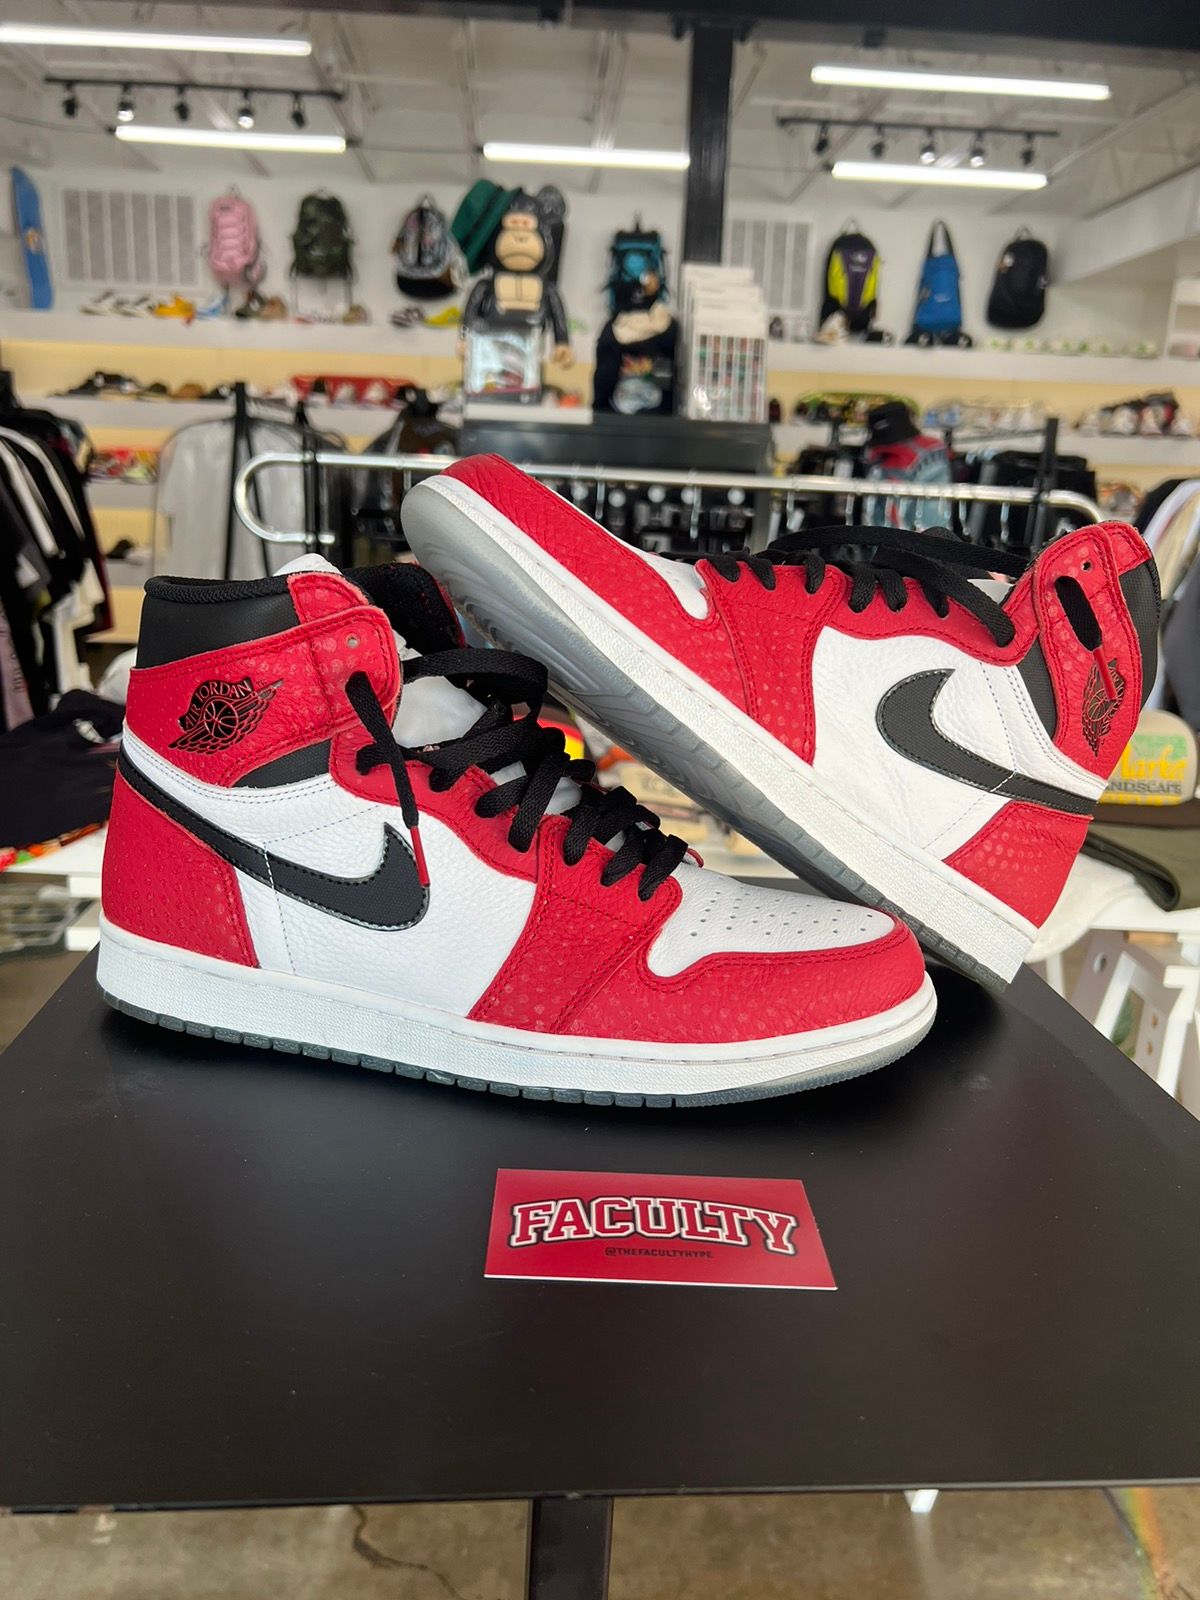 Pre-owned Jordan Nike Jordan 1 Retro High Spider-man Origin Story Shoes In Red